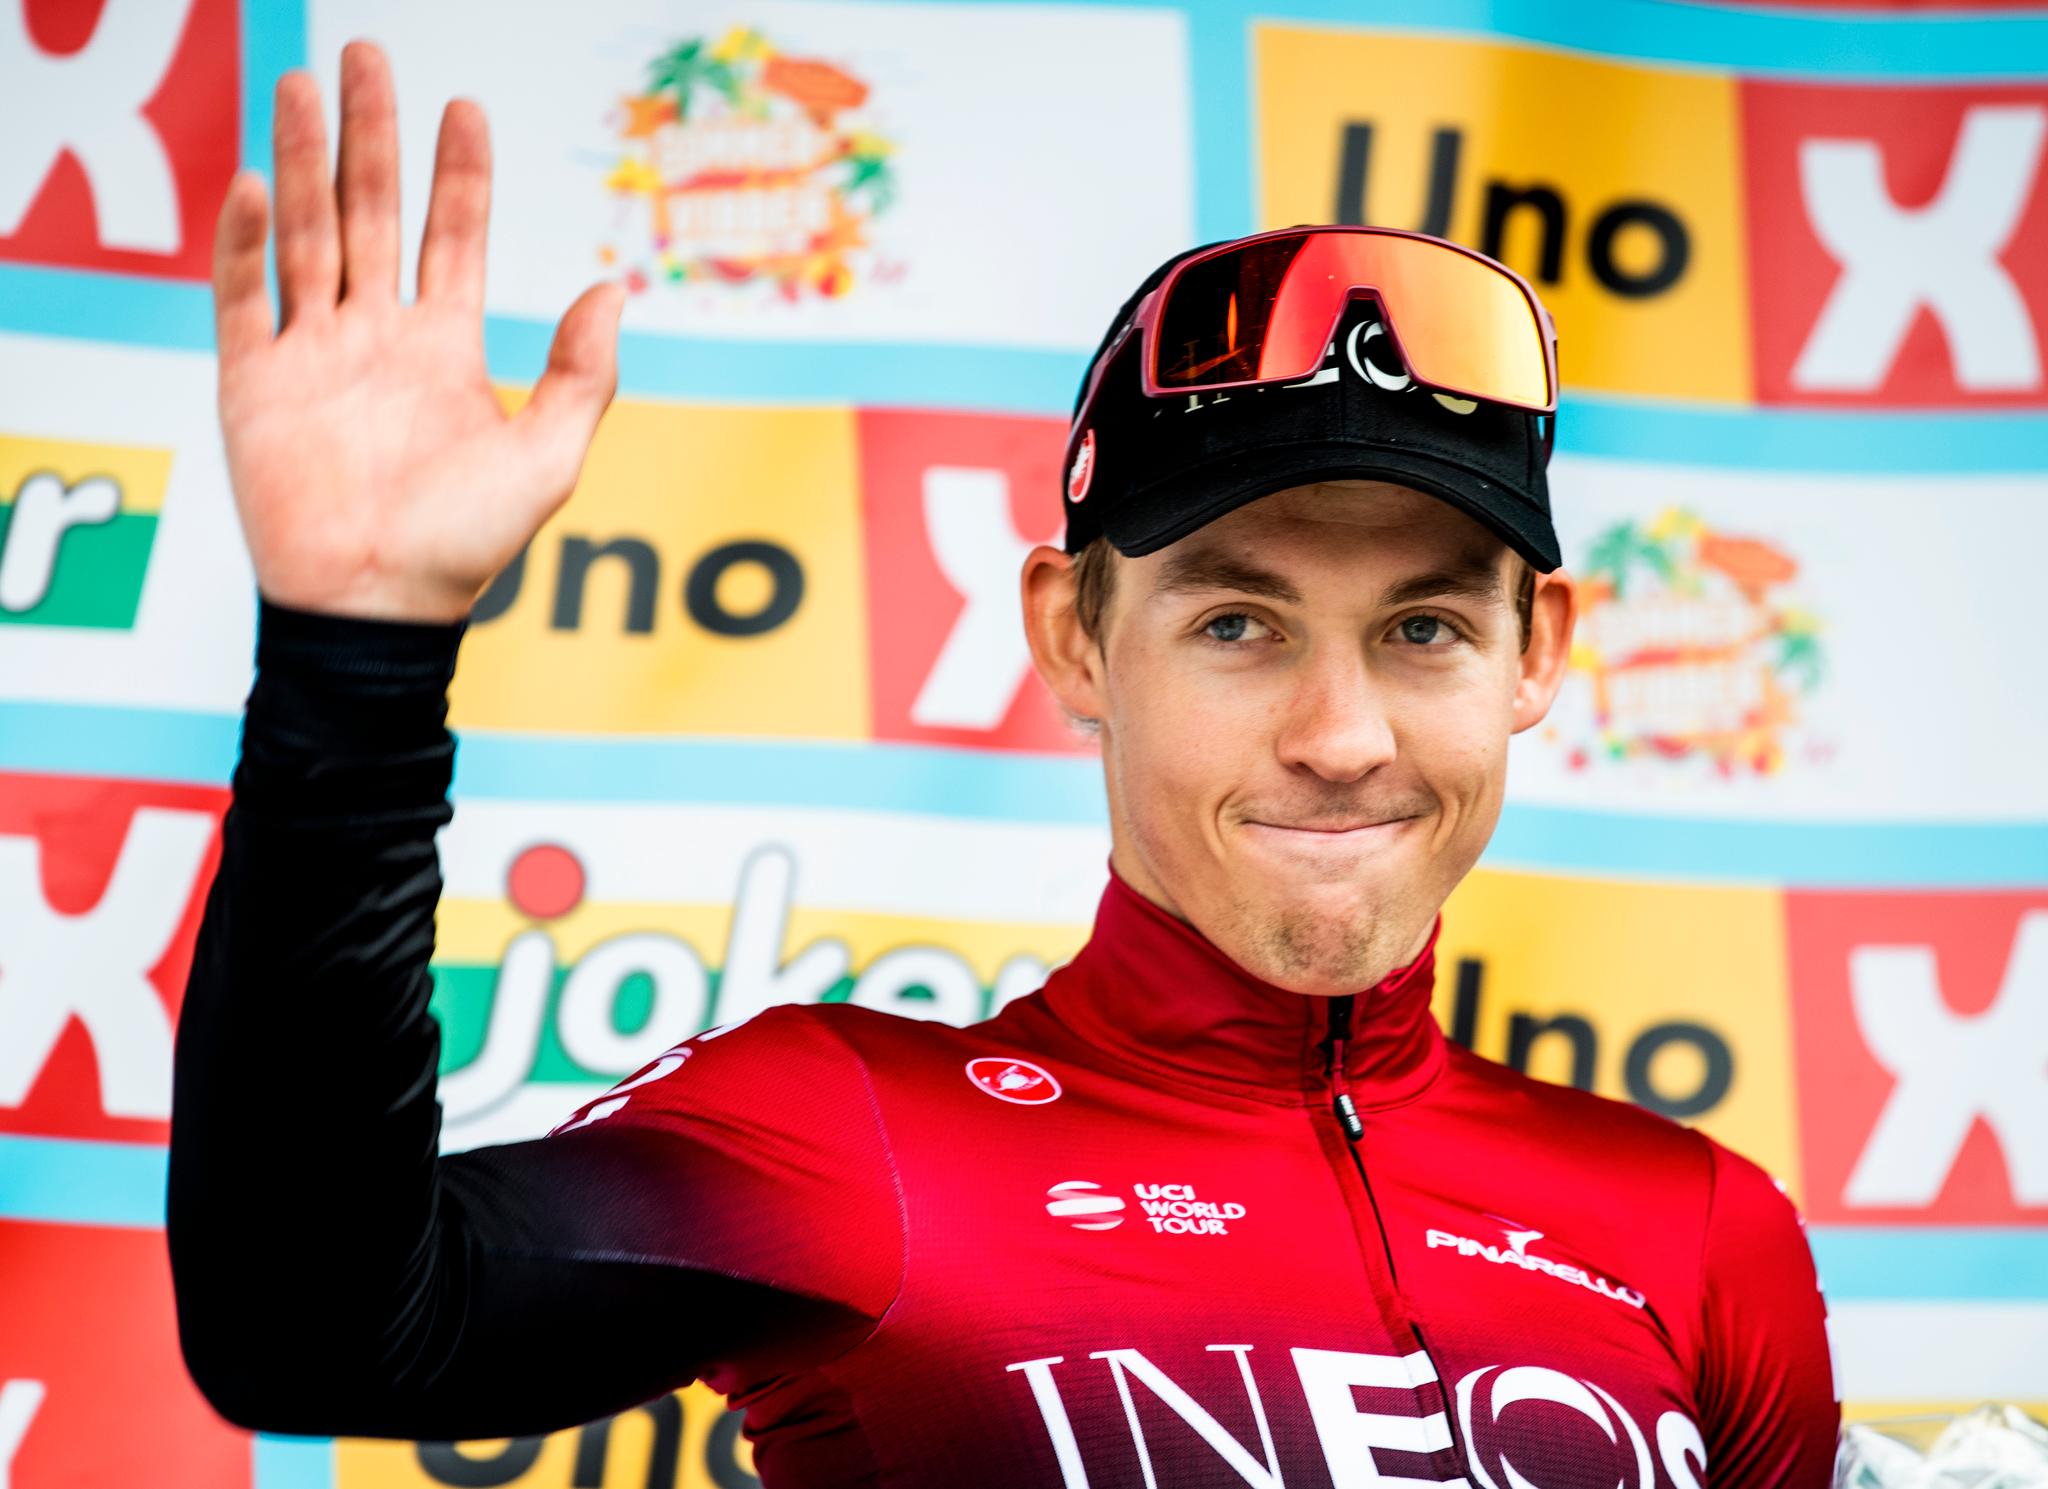 Kristoffer Halvorsen spurtet inn til sjuendeplass på første etappen av Tour Down Under tirsdag. Nå sykler han for EF-laget. 